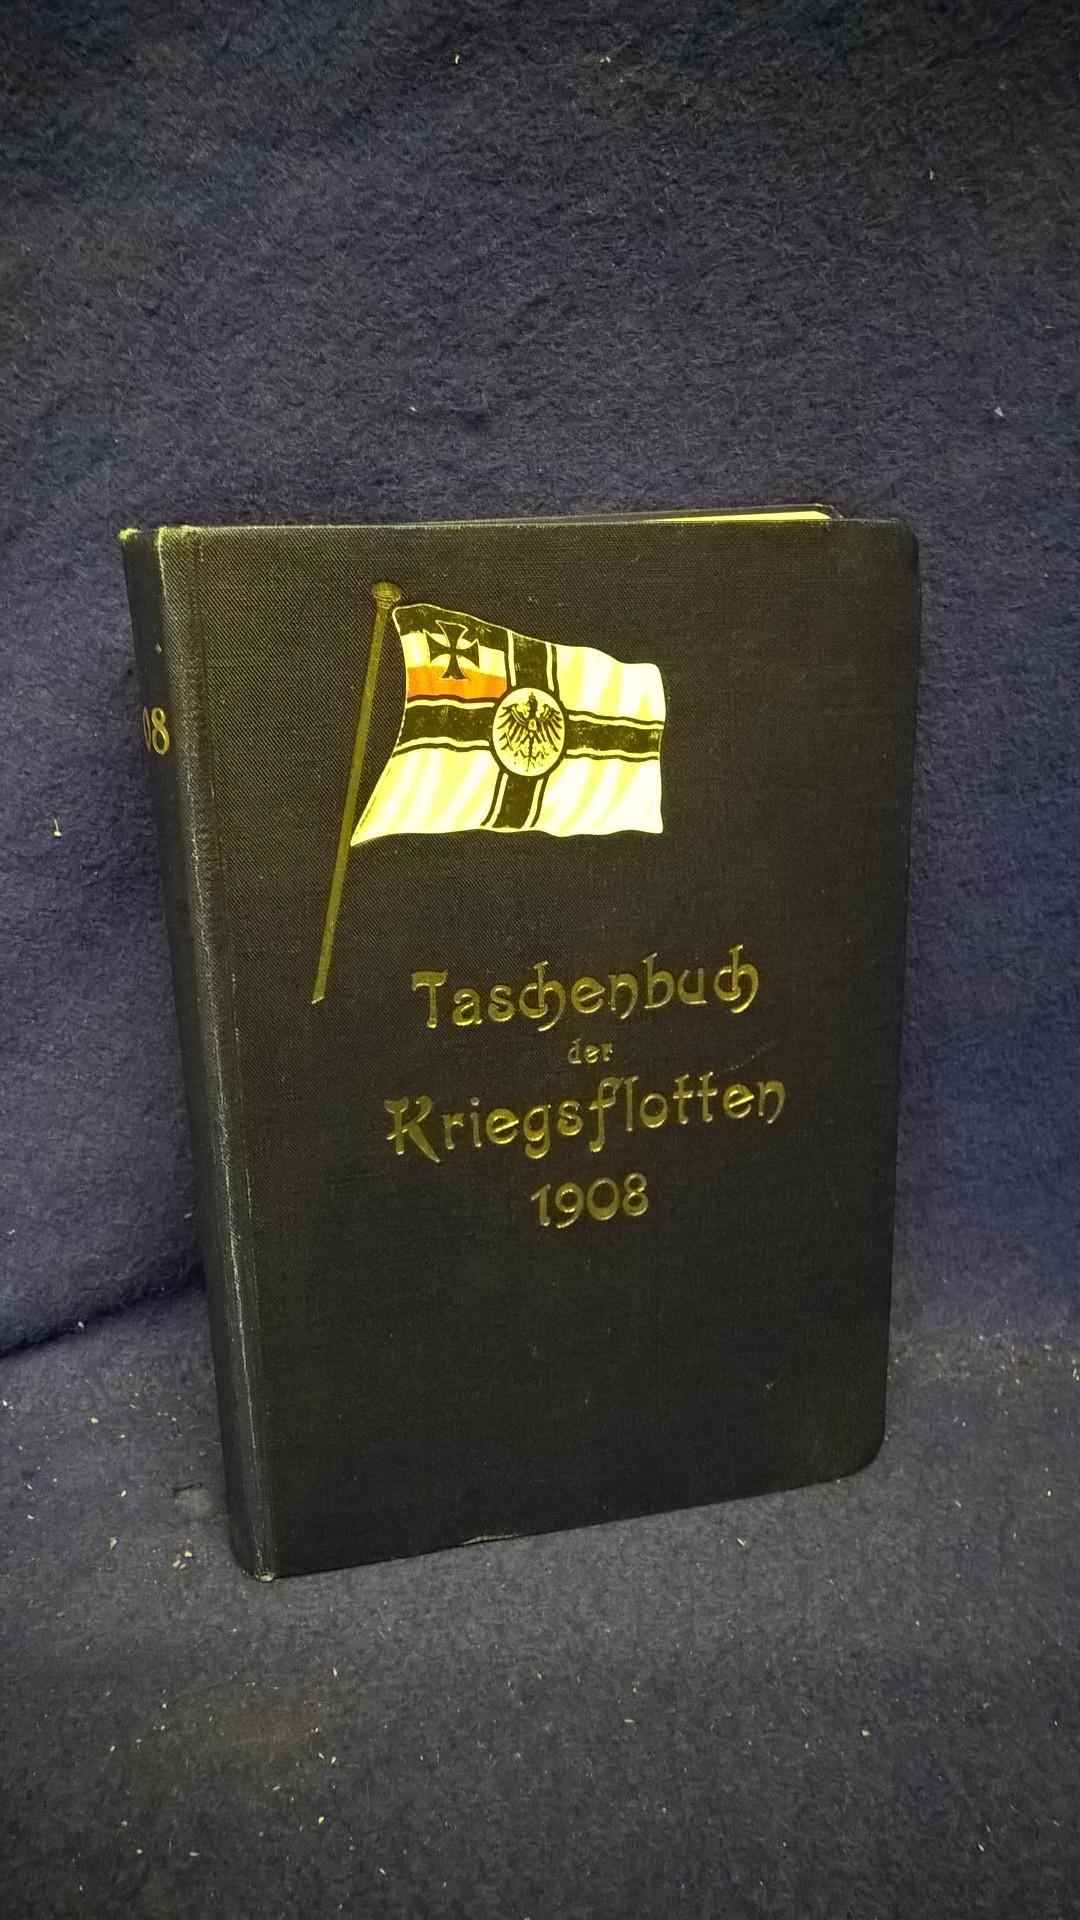 Taschenbuch der Kriegsflotten IX. Jahrgang 1908